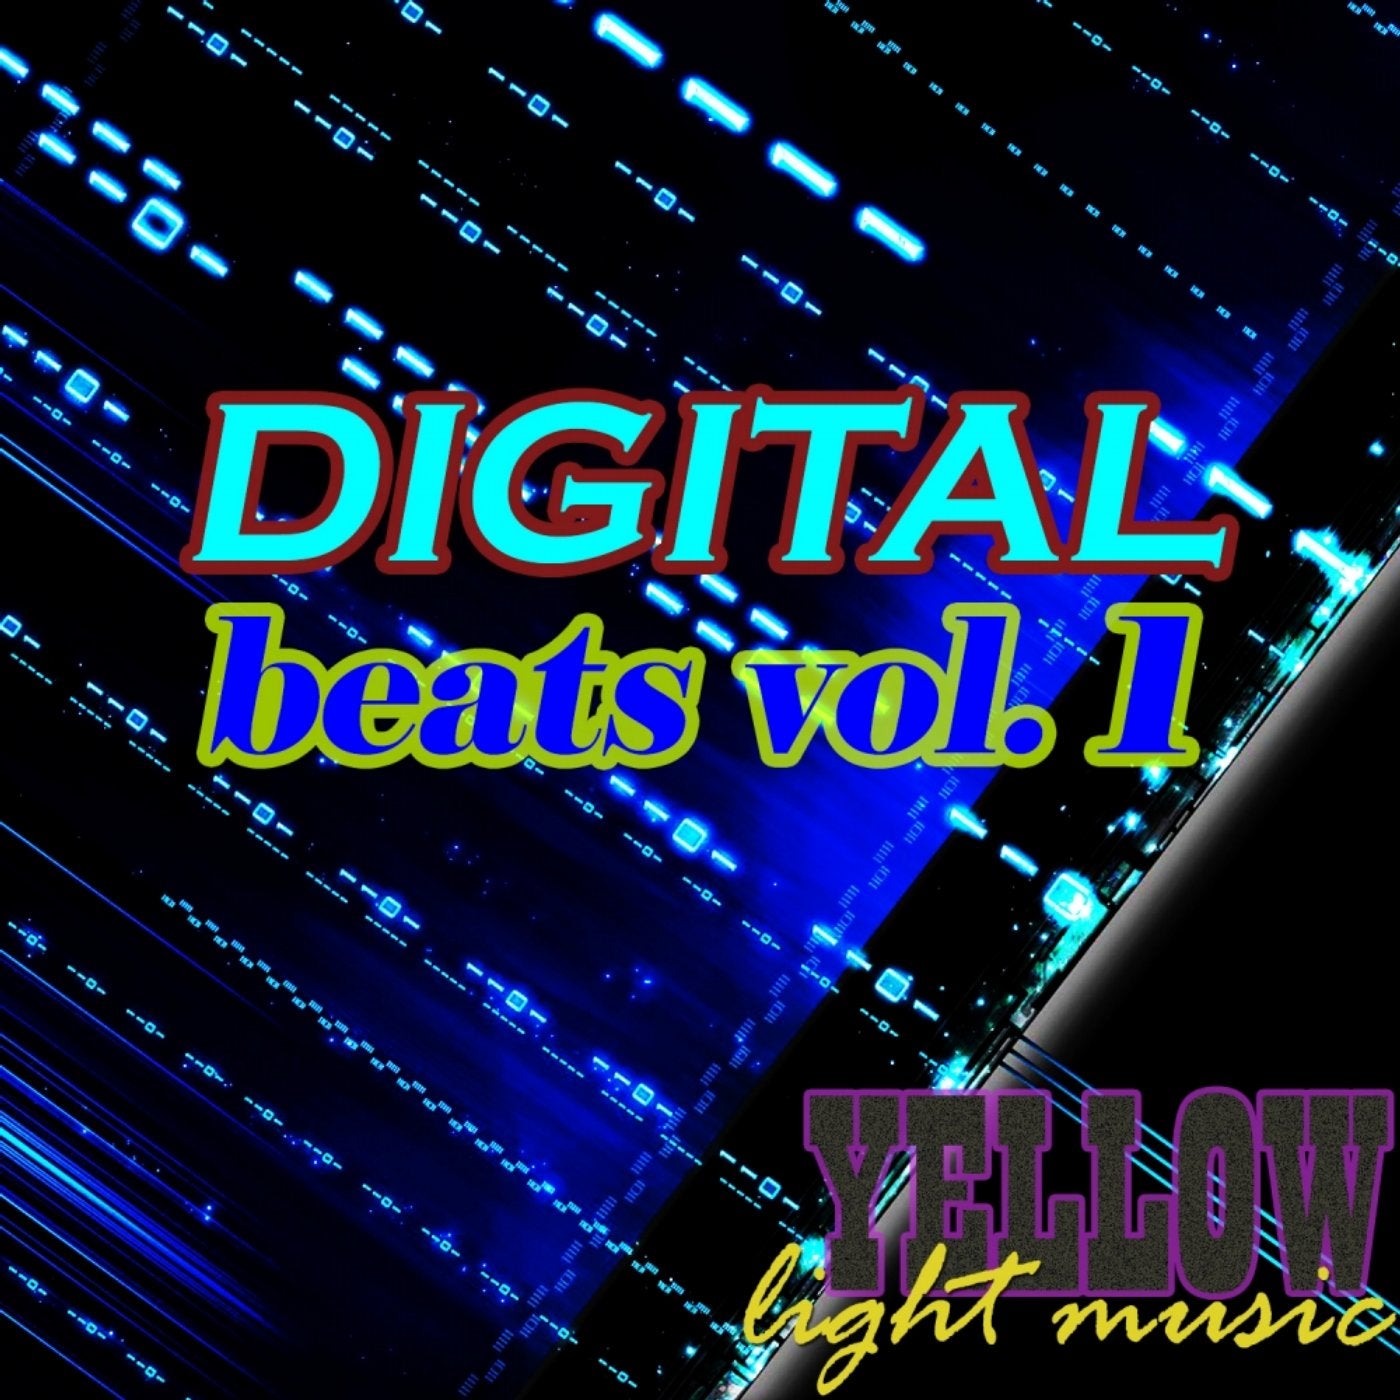 Digital Beats, Vol. 1